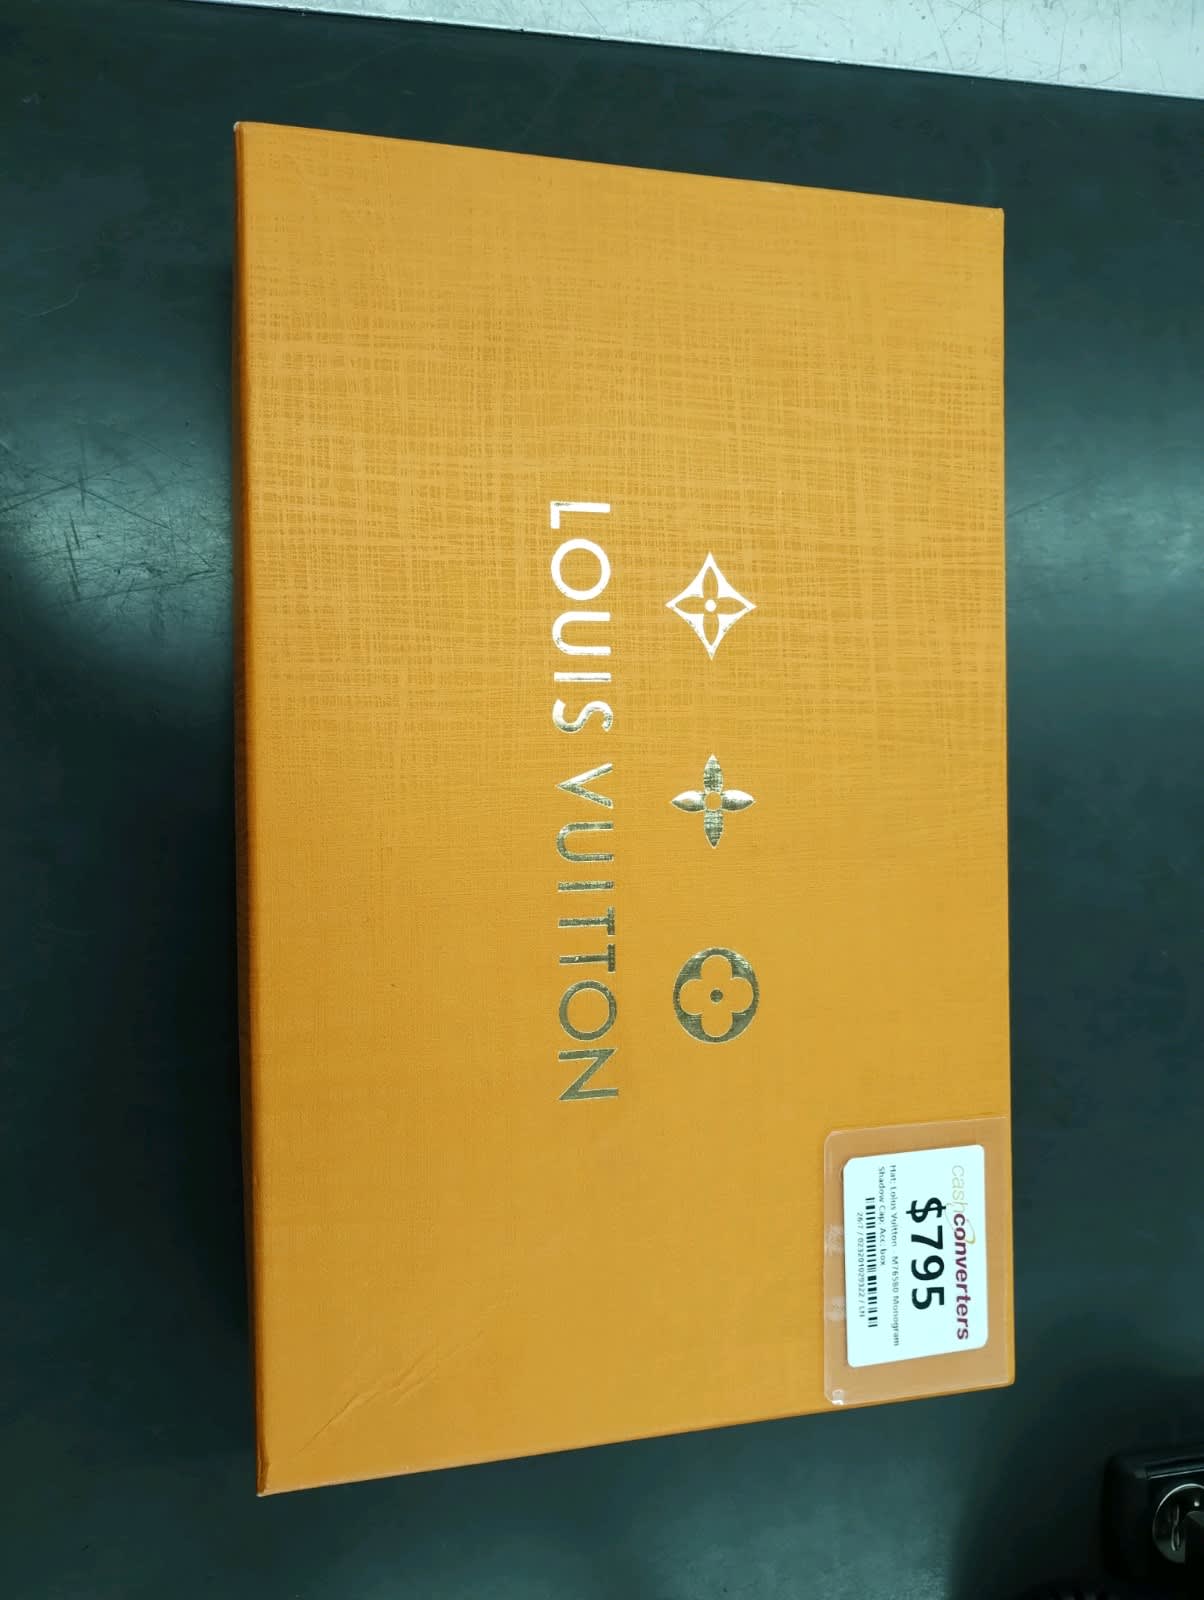 Louis Vuitton MONOGRAM Monogram shadow cap (M76580)